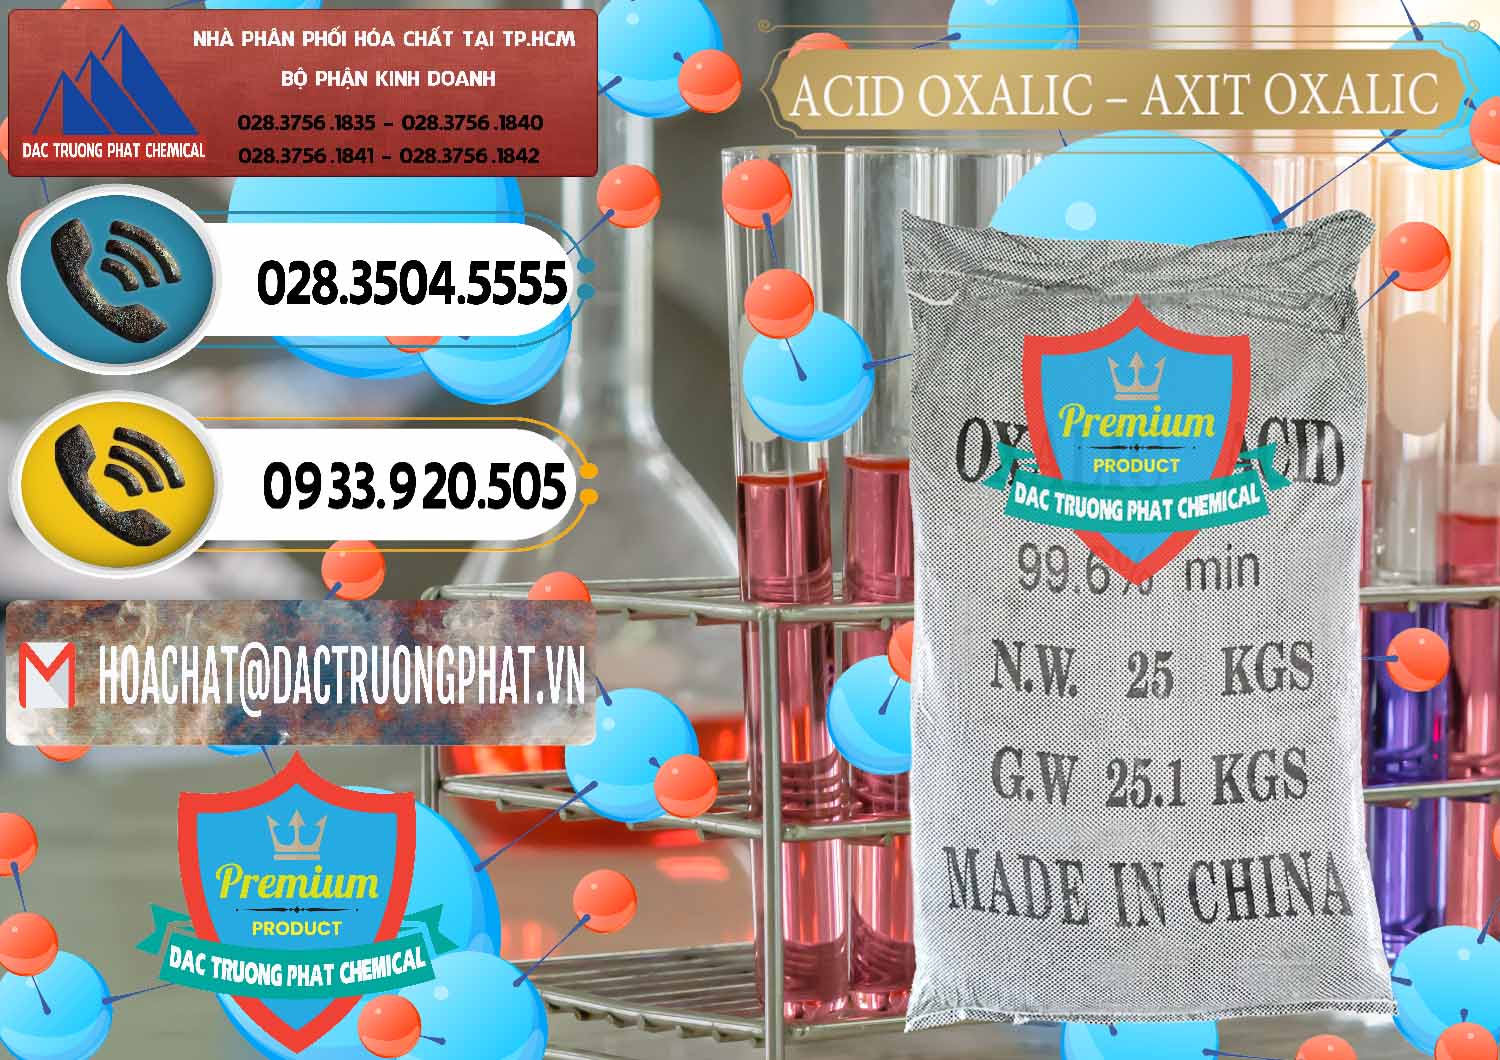 Nơi chuyên phân phối và bán Acid Oxalic – Axit Oxalic 99.6% Trung Quốc China - 0014 - Nơi phân phối và cung ứng hóa chất tại TP.HCM - hoachatdetnhuom.vn